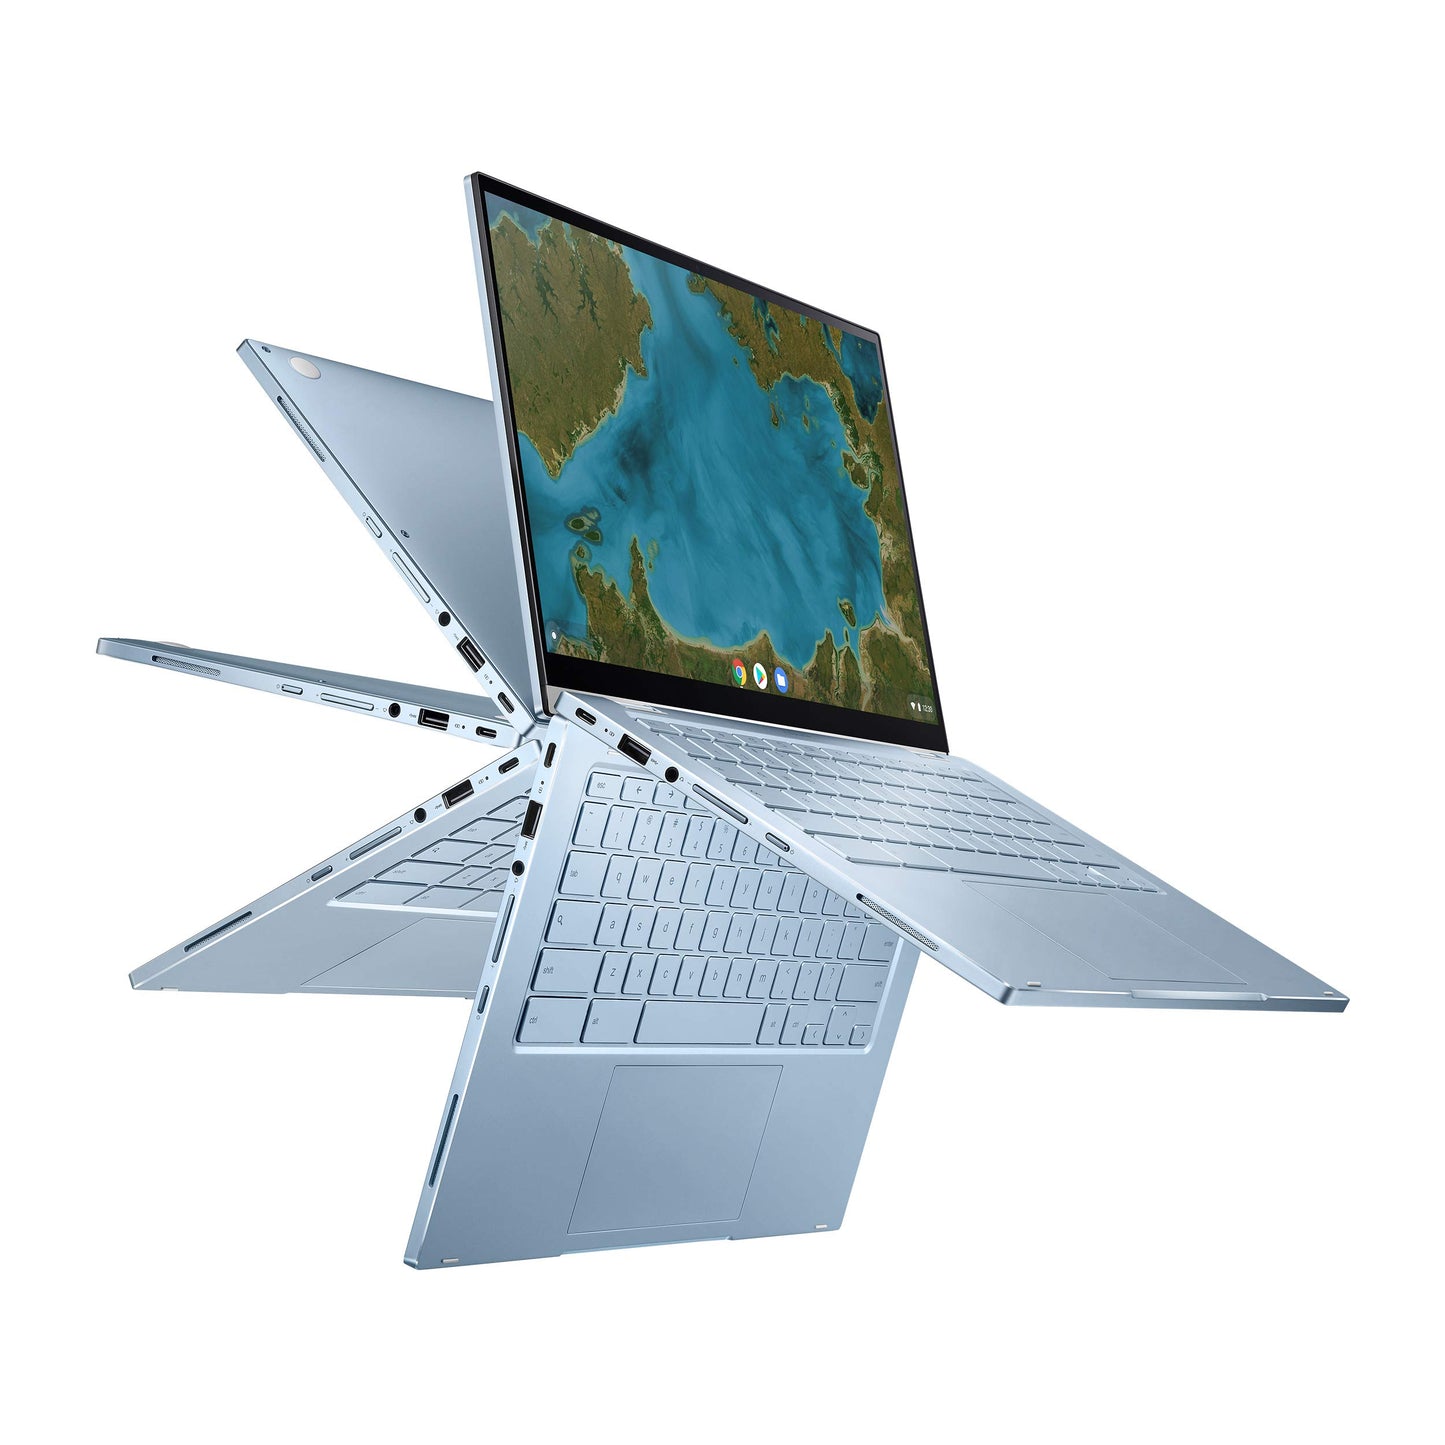 ASUS Chromebook Flip C433 - Laptop 2 en 1, pantalla táctil FHD NanoEdge de 14 pulgadas, procesador Intel Core m3-8100Y, 8 GB de RAM, 64 GB de almacenamiento eMMC